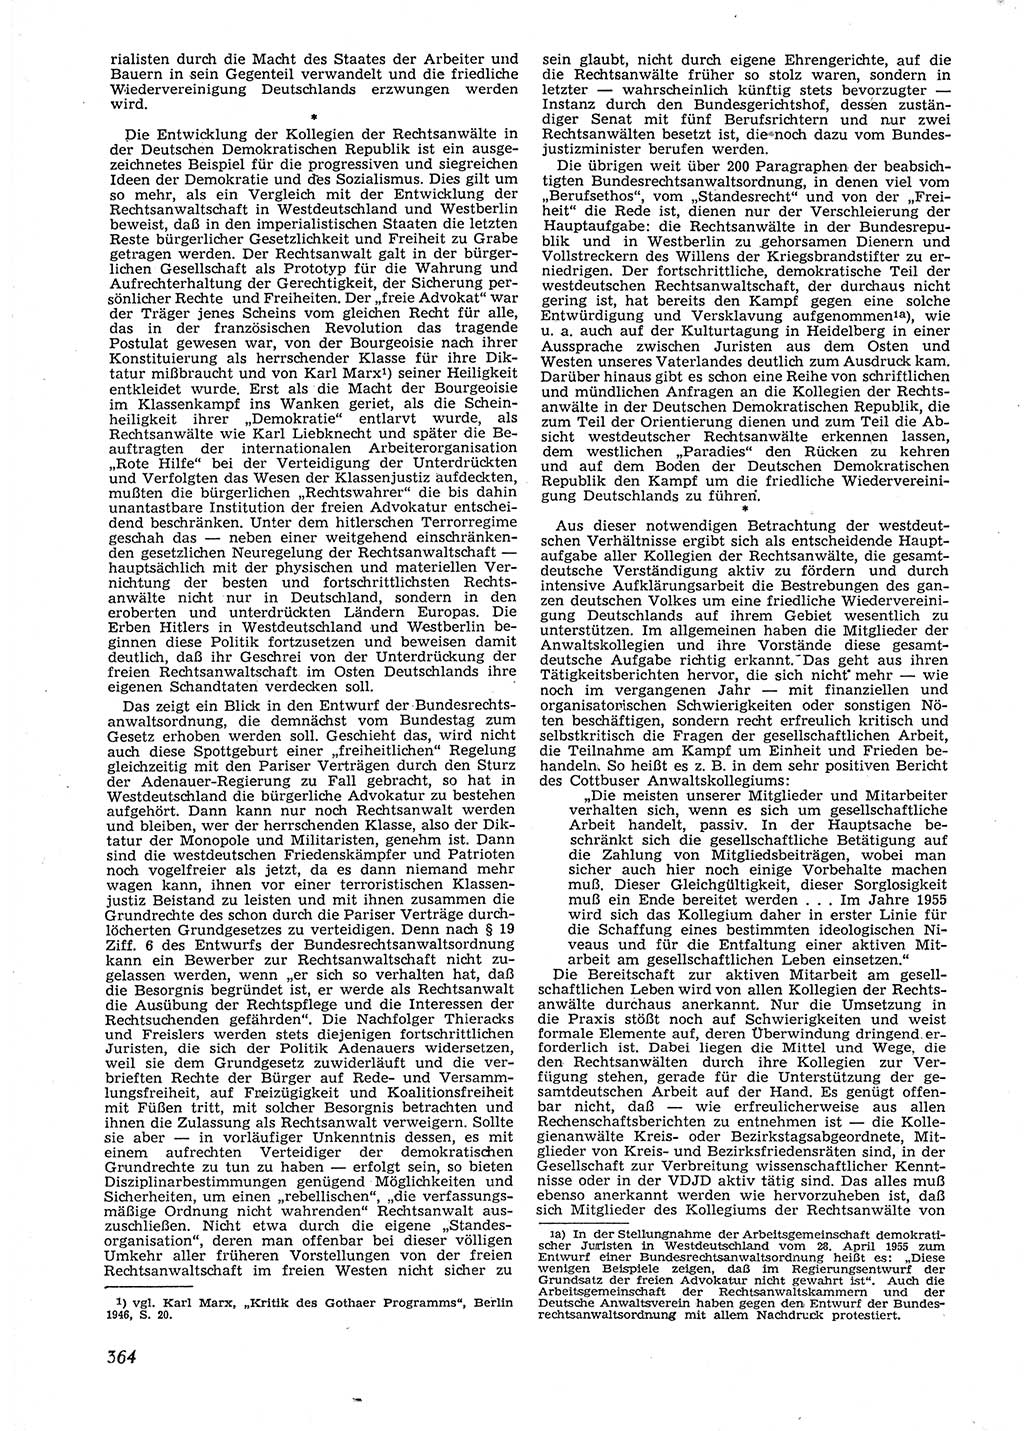 Neue Justiz (NJ), Zeitschrift für Recht und Rechtswissenschaft [Deutsche Demokratische Republik (DDR)], 9. Jahrgang 1955, Seite 364 (NJ DDR 1955, S. 364)